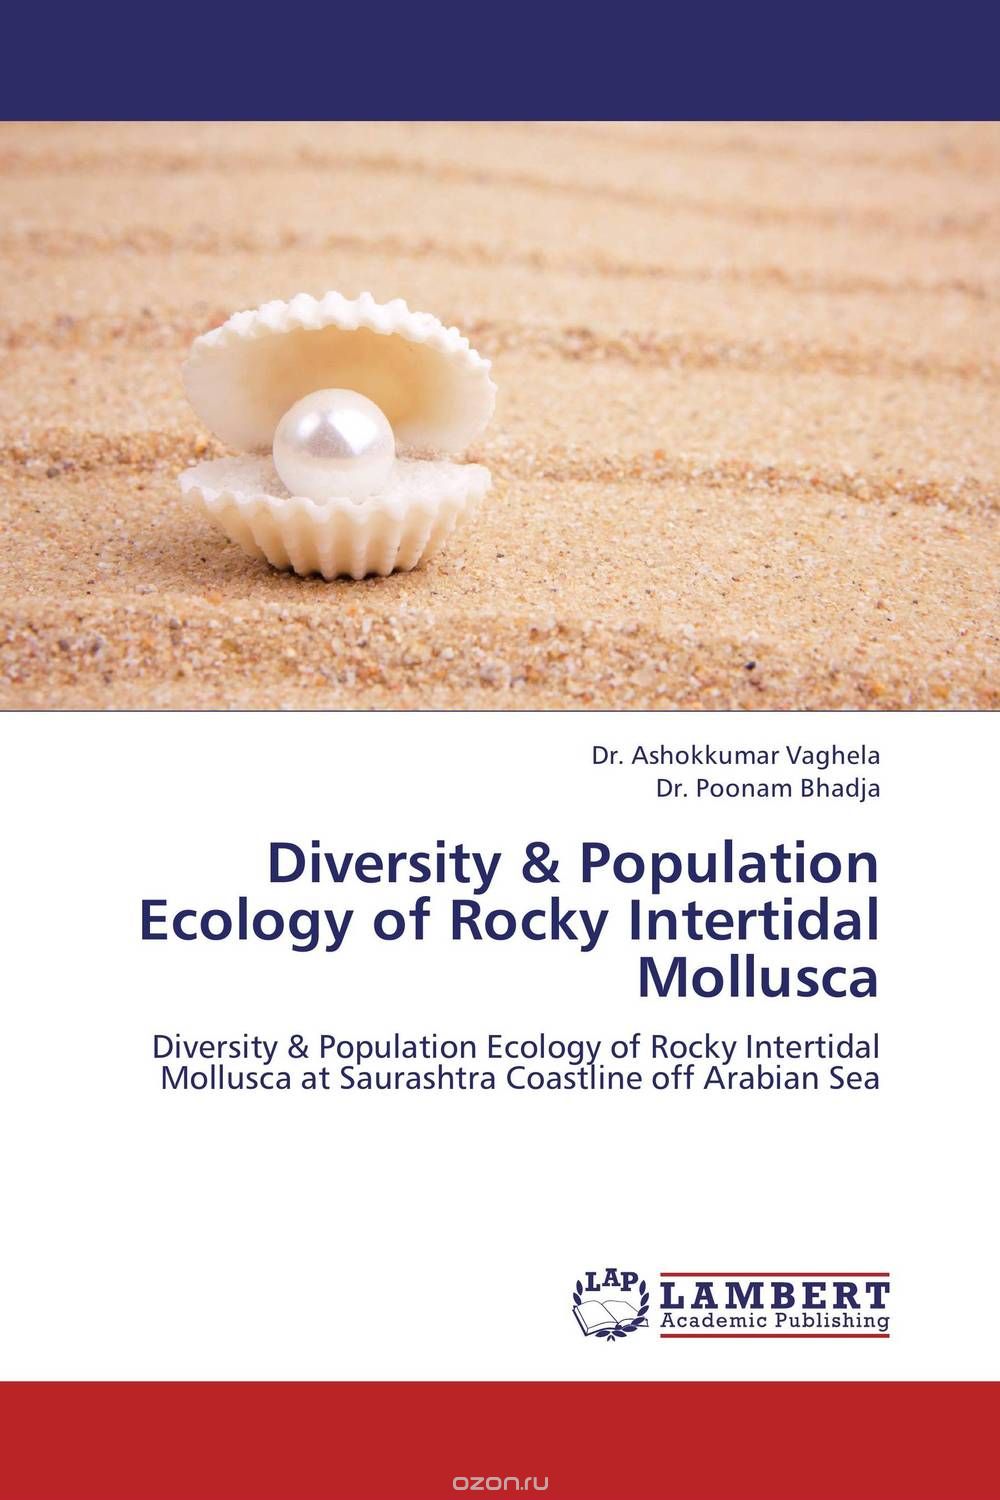 Скачать книгу "Diversity & Population Ecology of Rocky Intertidal Mollusca"